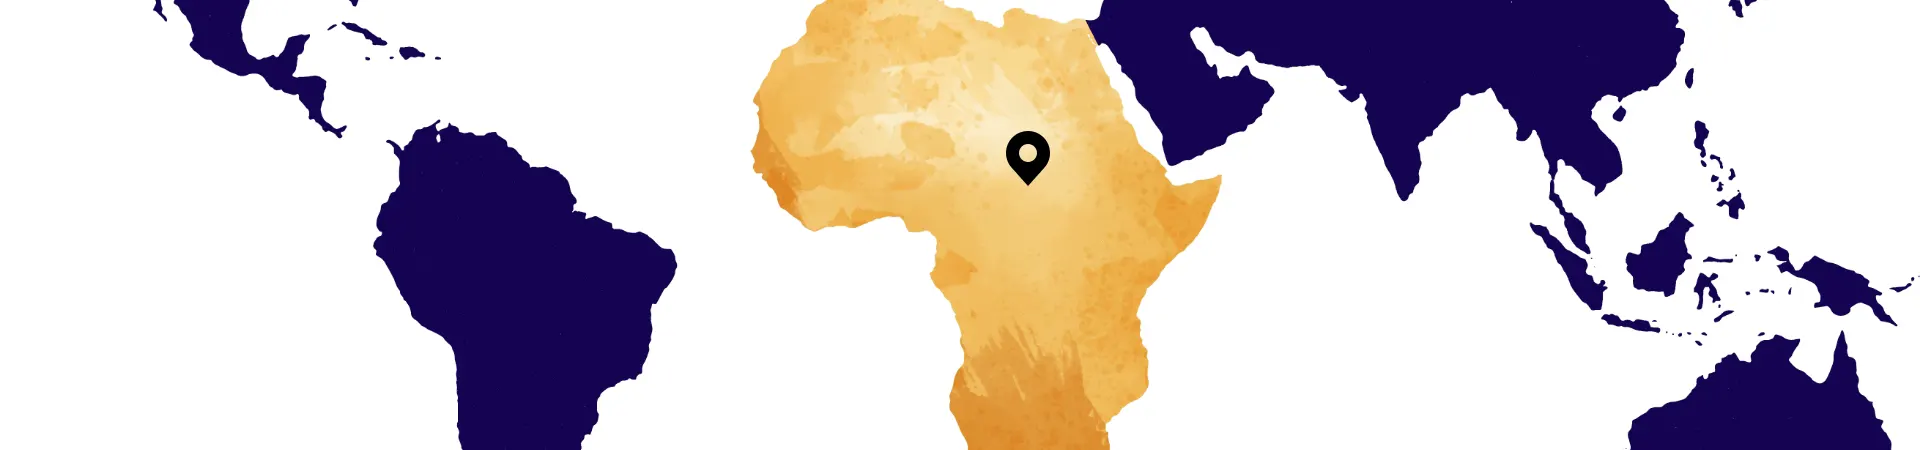 Africa tour